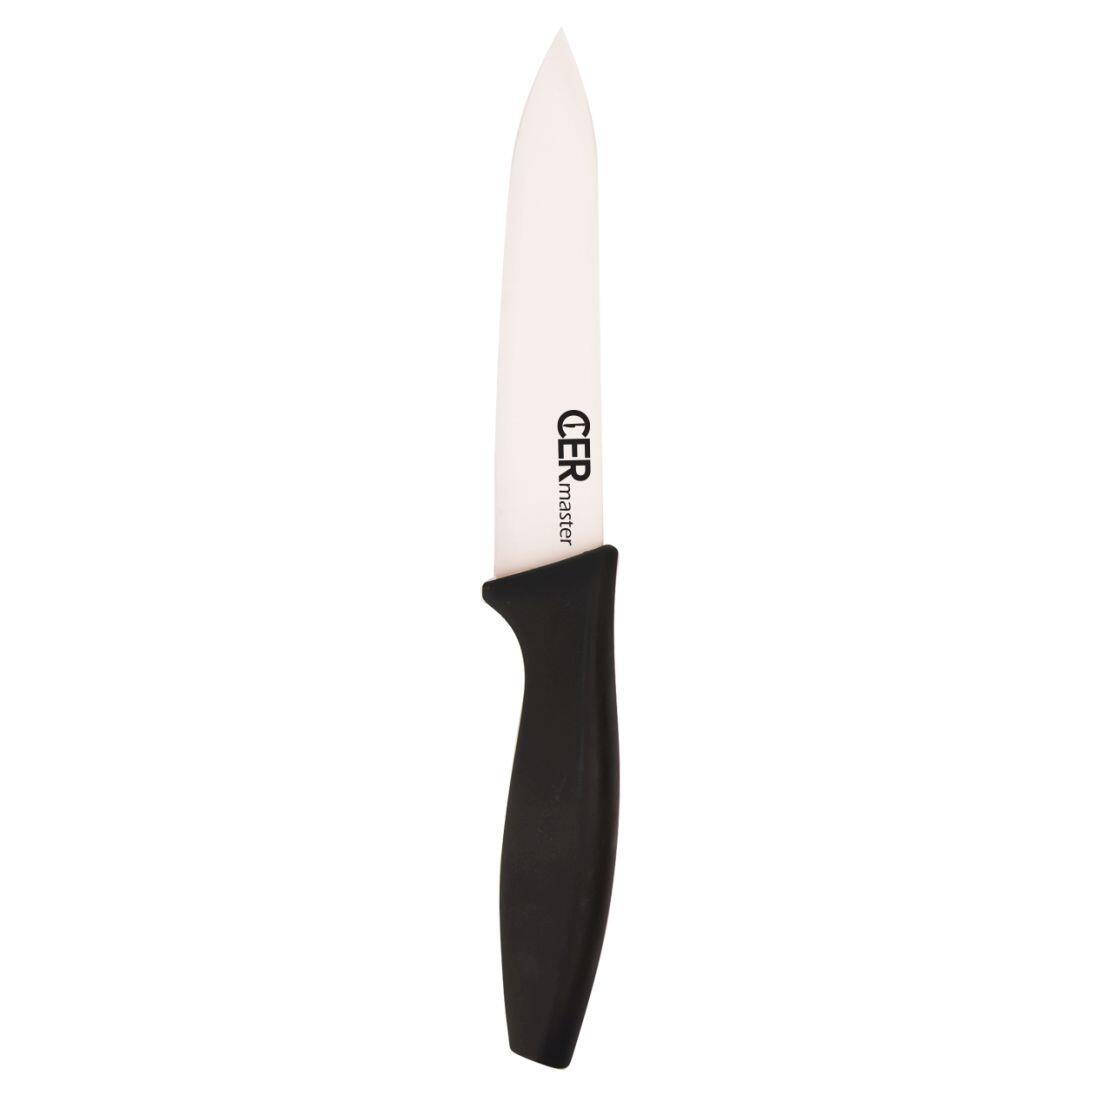 nůž keramický 12,5cm univerzální CERMASTER 0.06 Kg MAXMIX Sklad14 282160 14